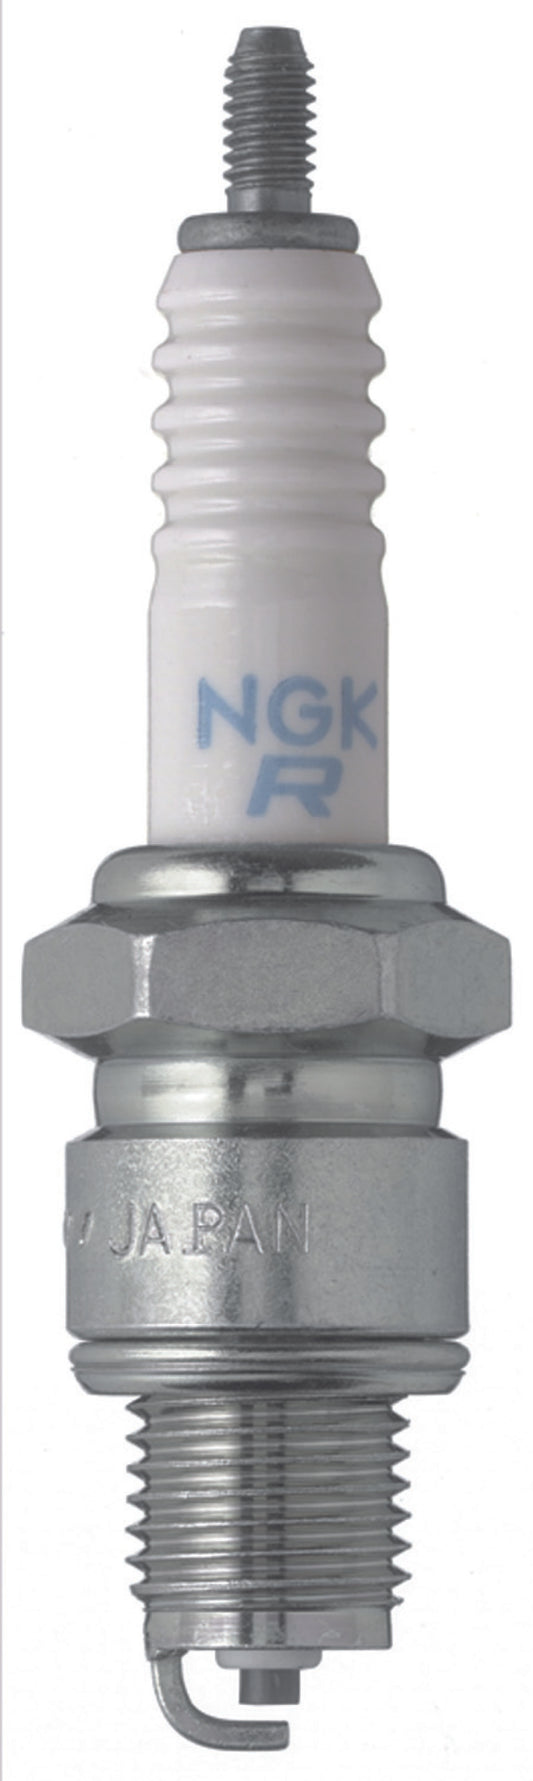 NGK Standard Spark Plug Box of 10 (DR6HS)